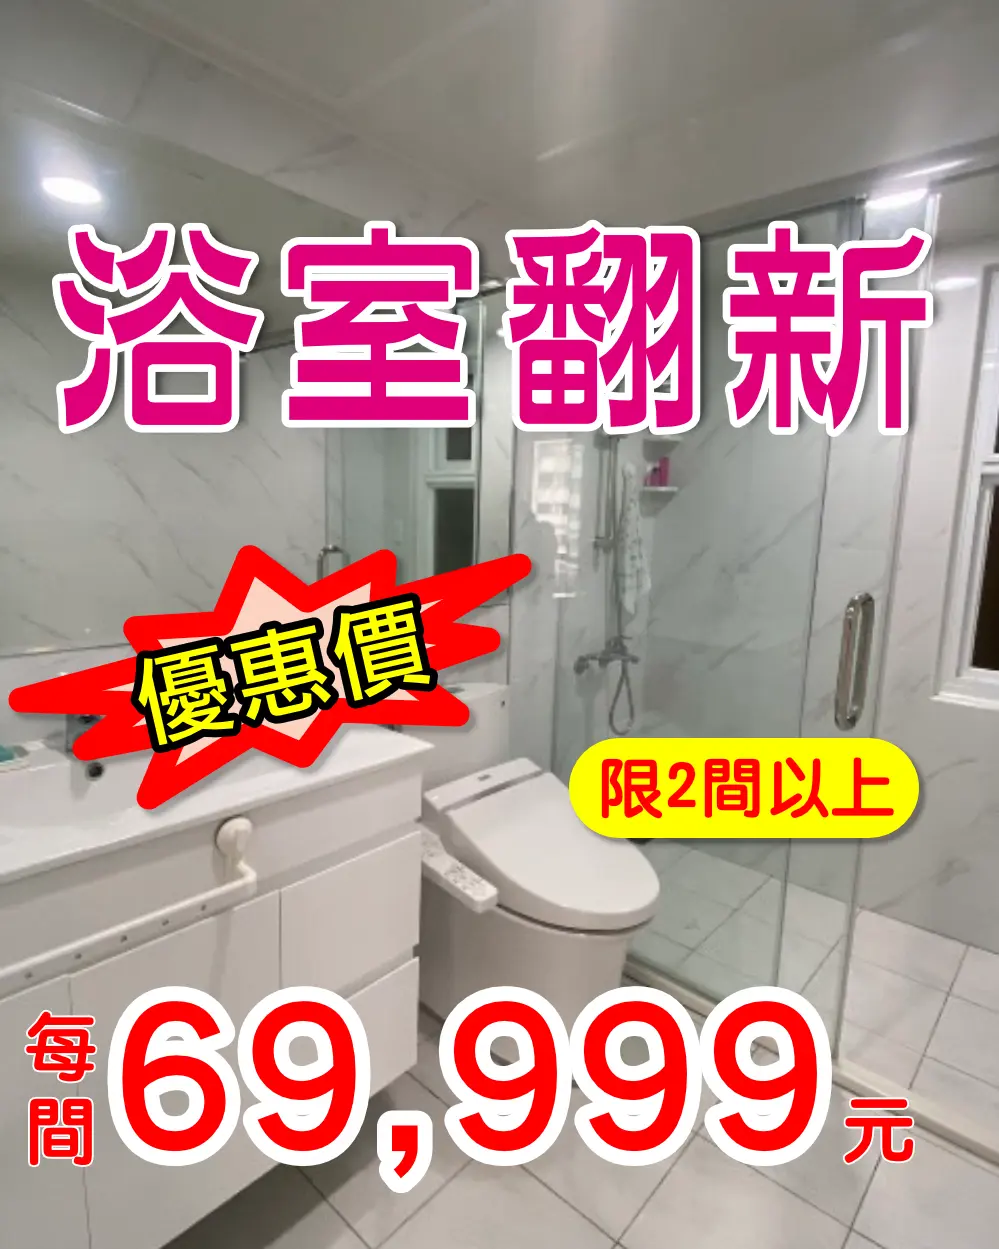 浴室翻新特價專案每間69999元